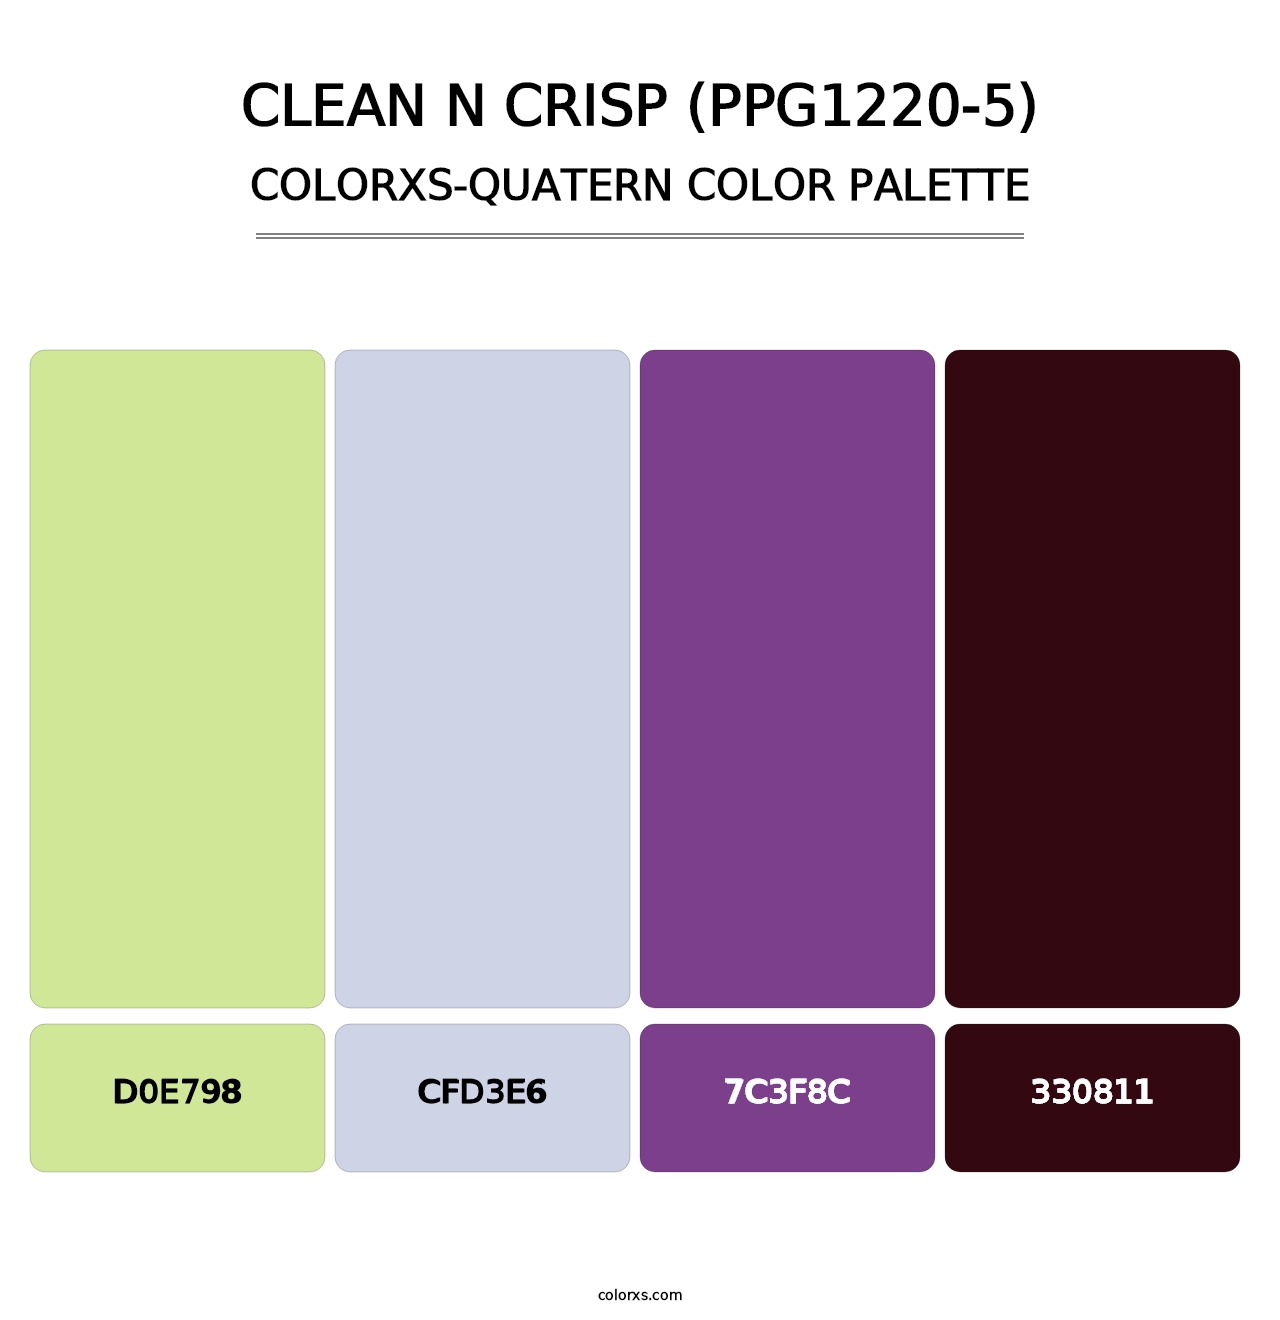 Clean N Crisp (PPG1220-5) - Colorxs Quatern Palette